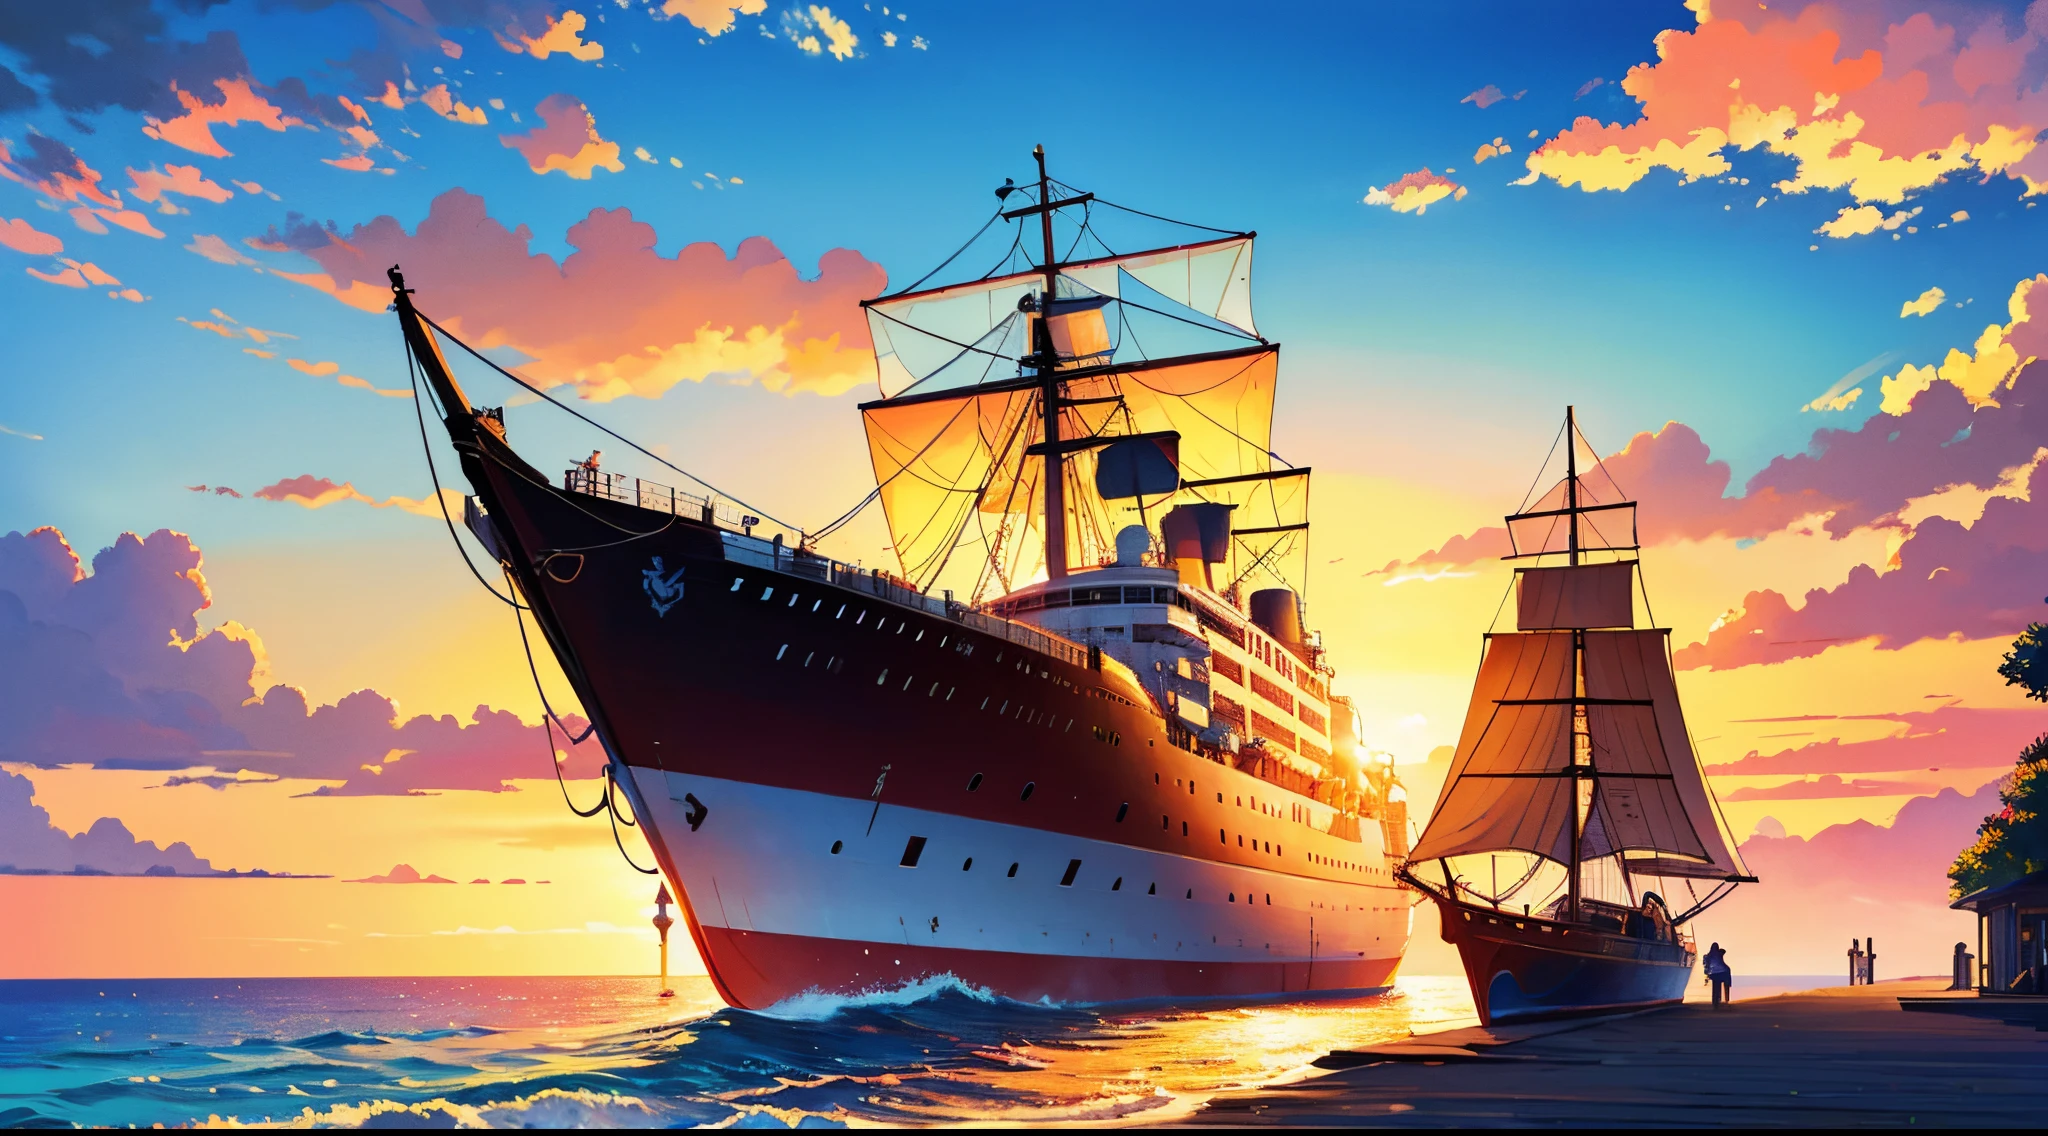 日没時に船が出航する,図,油絵,傑作:1.2,超詳細,現実的:1.37,カラフル,鮮やかな色彩,暖かい色調,柔らかな照明